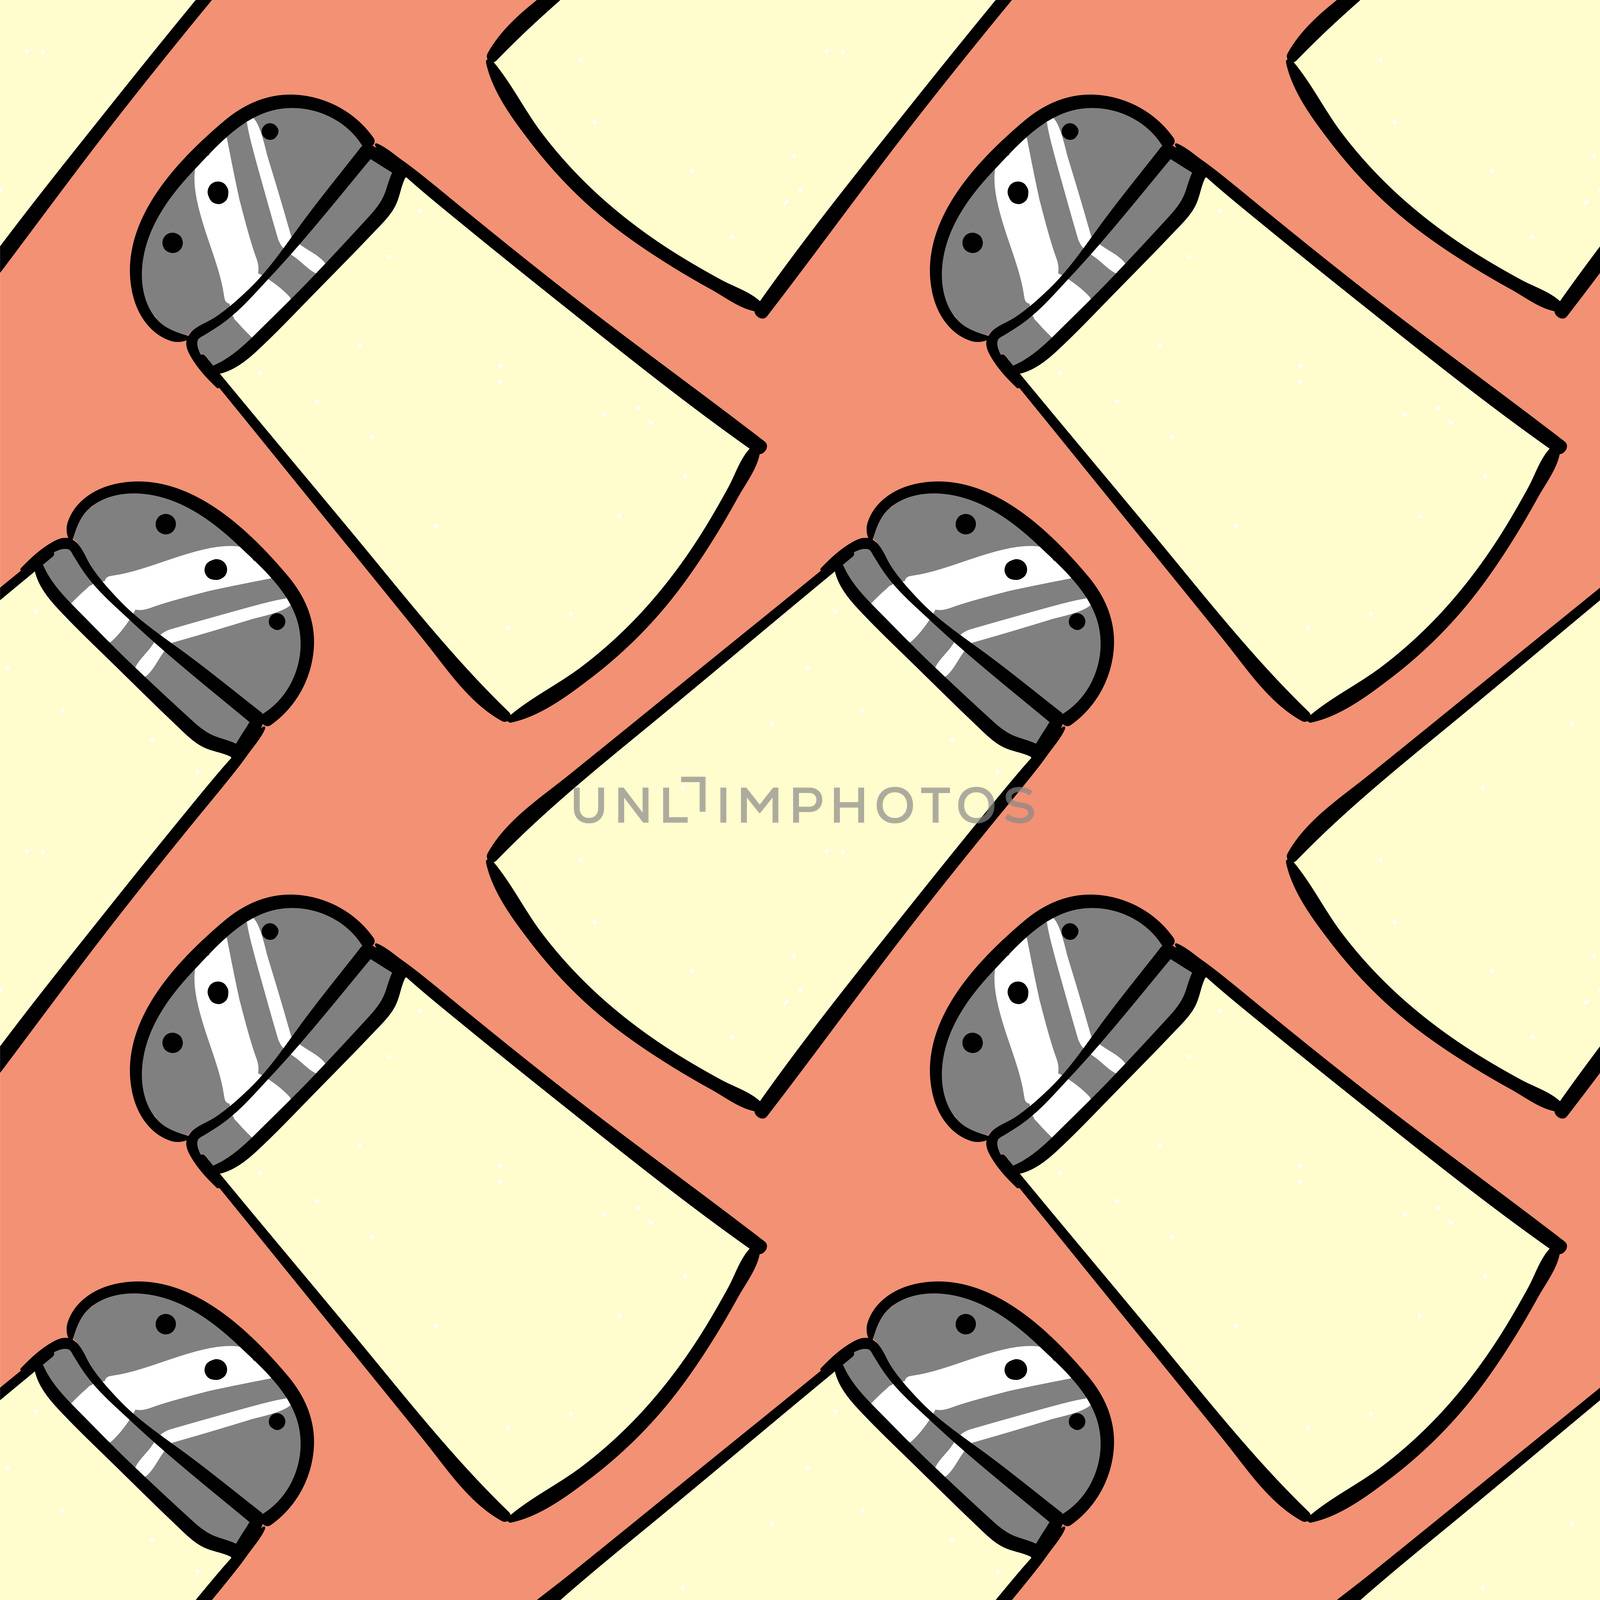 Salt shaker pattern , illustration, vector on white background by Morphart